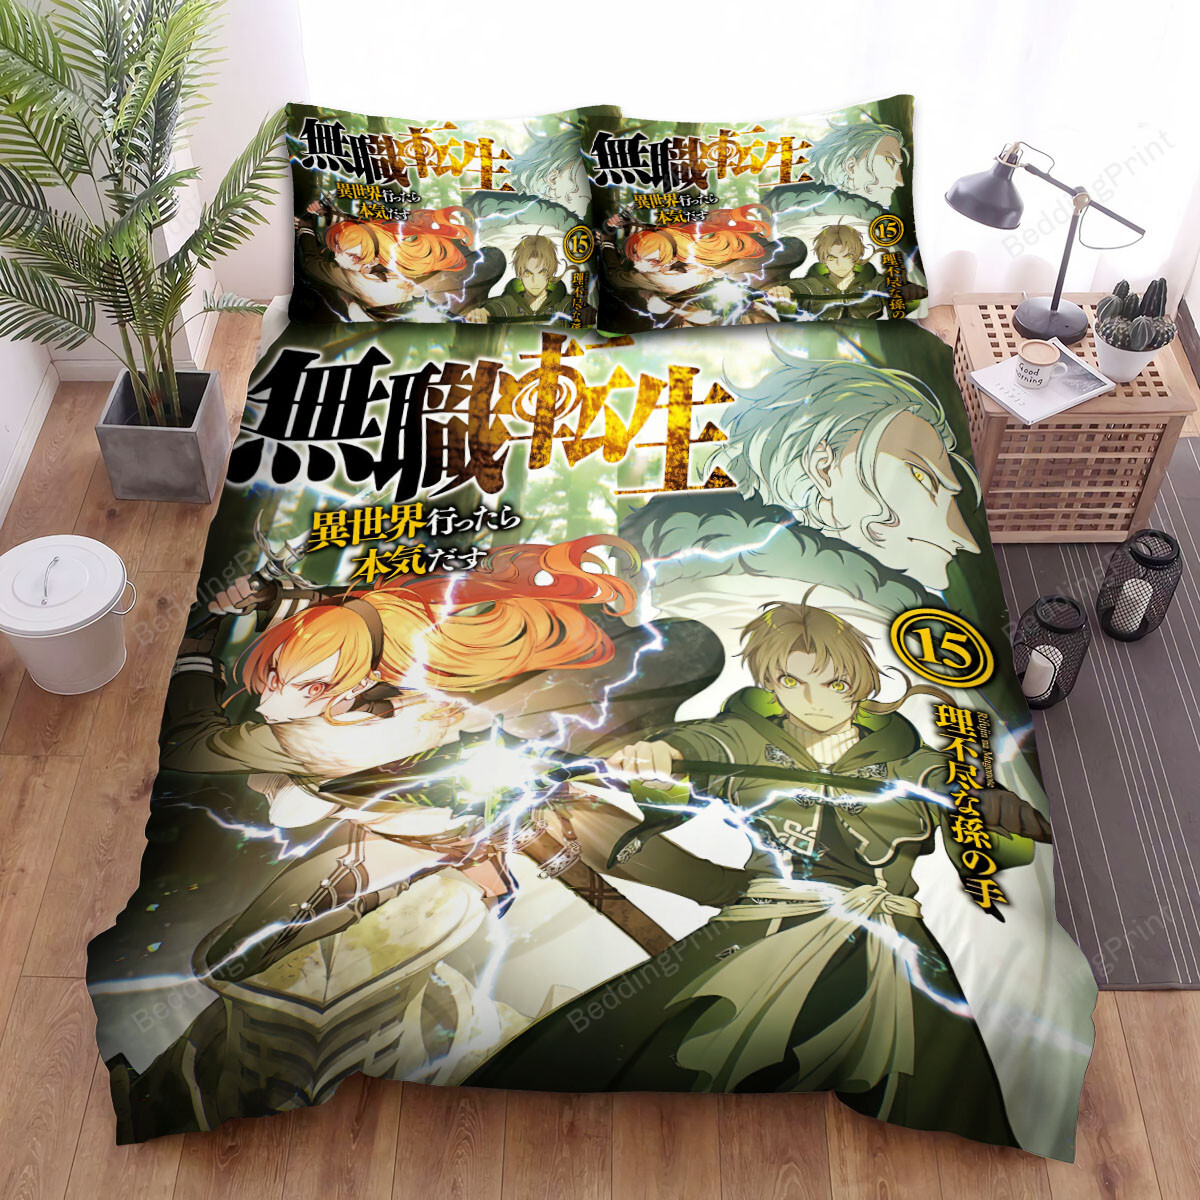 Mushoku Tensei Light Novel Volume 15 Art Cover Bed Sheets Spread Duvet Cover Bedding Sets